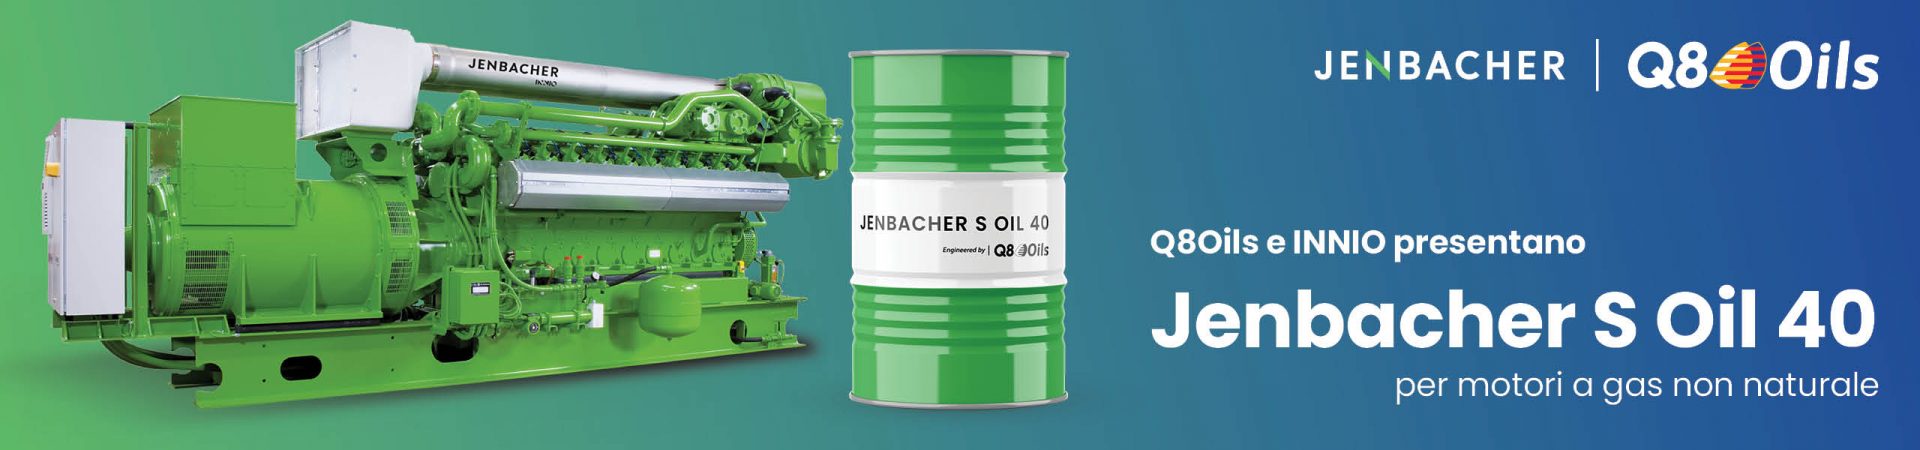 Jenbacher S Oil 40 - IT